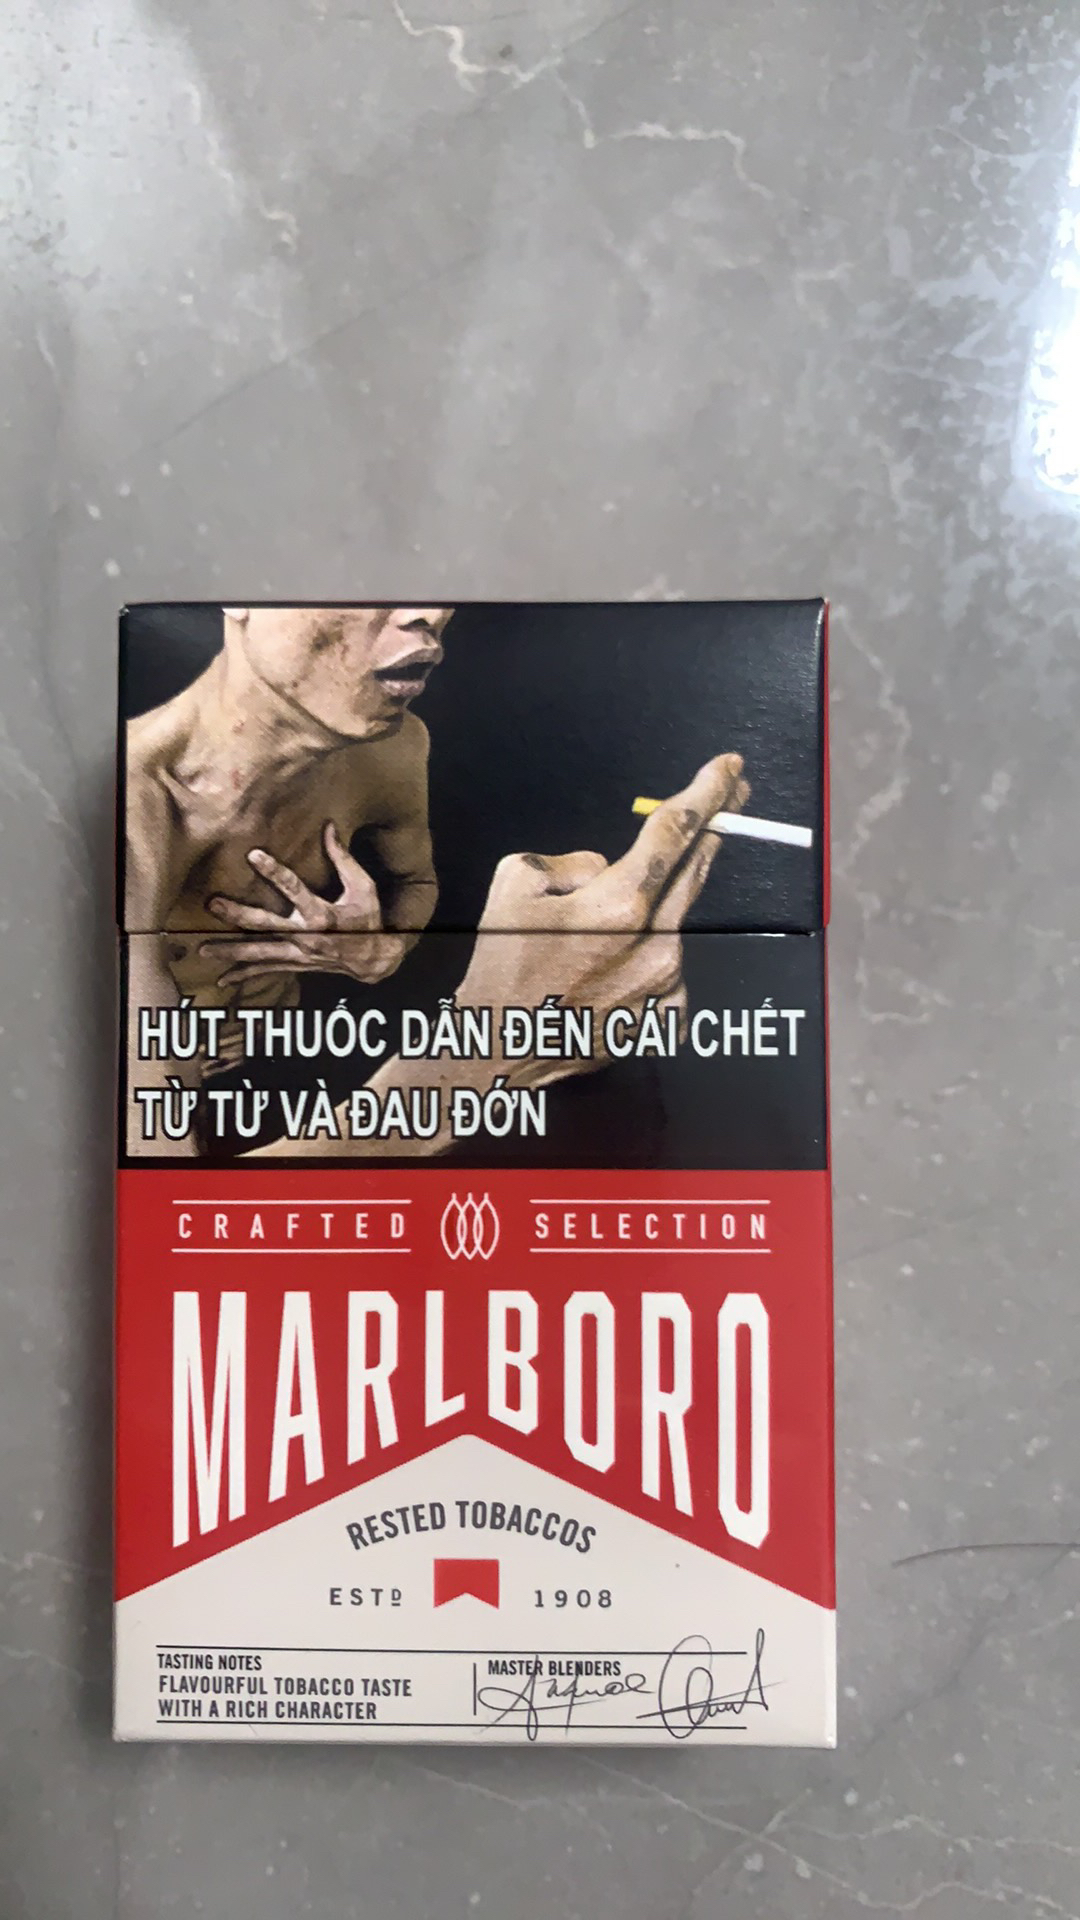 烟卡烟盒香港烟盒外国烟盒轰轰卡烟盒稀有呸呸卡儿童玩具烟盒烟卡